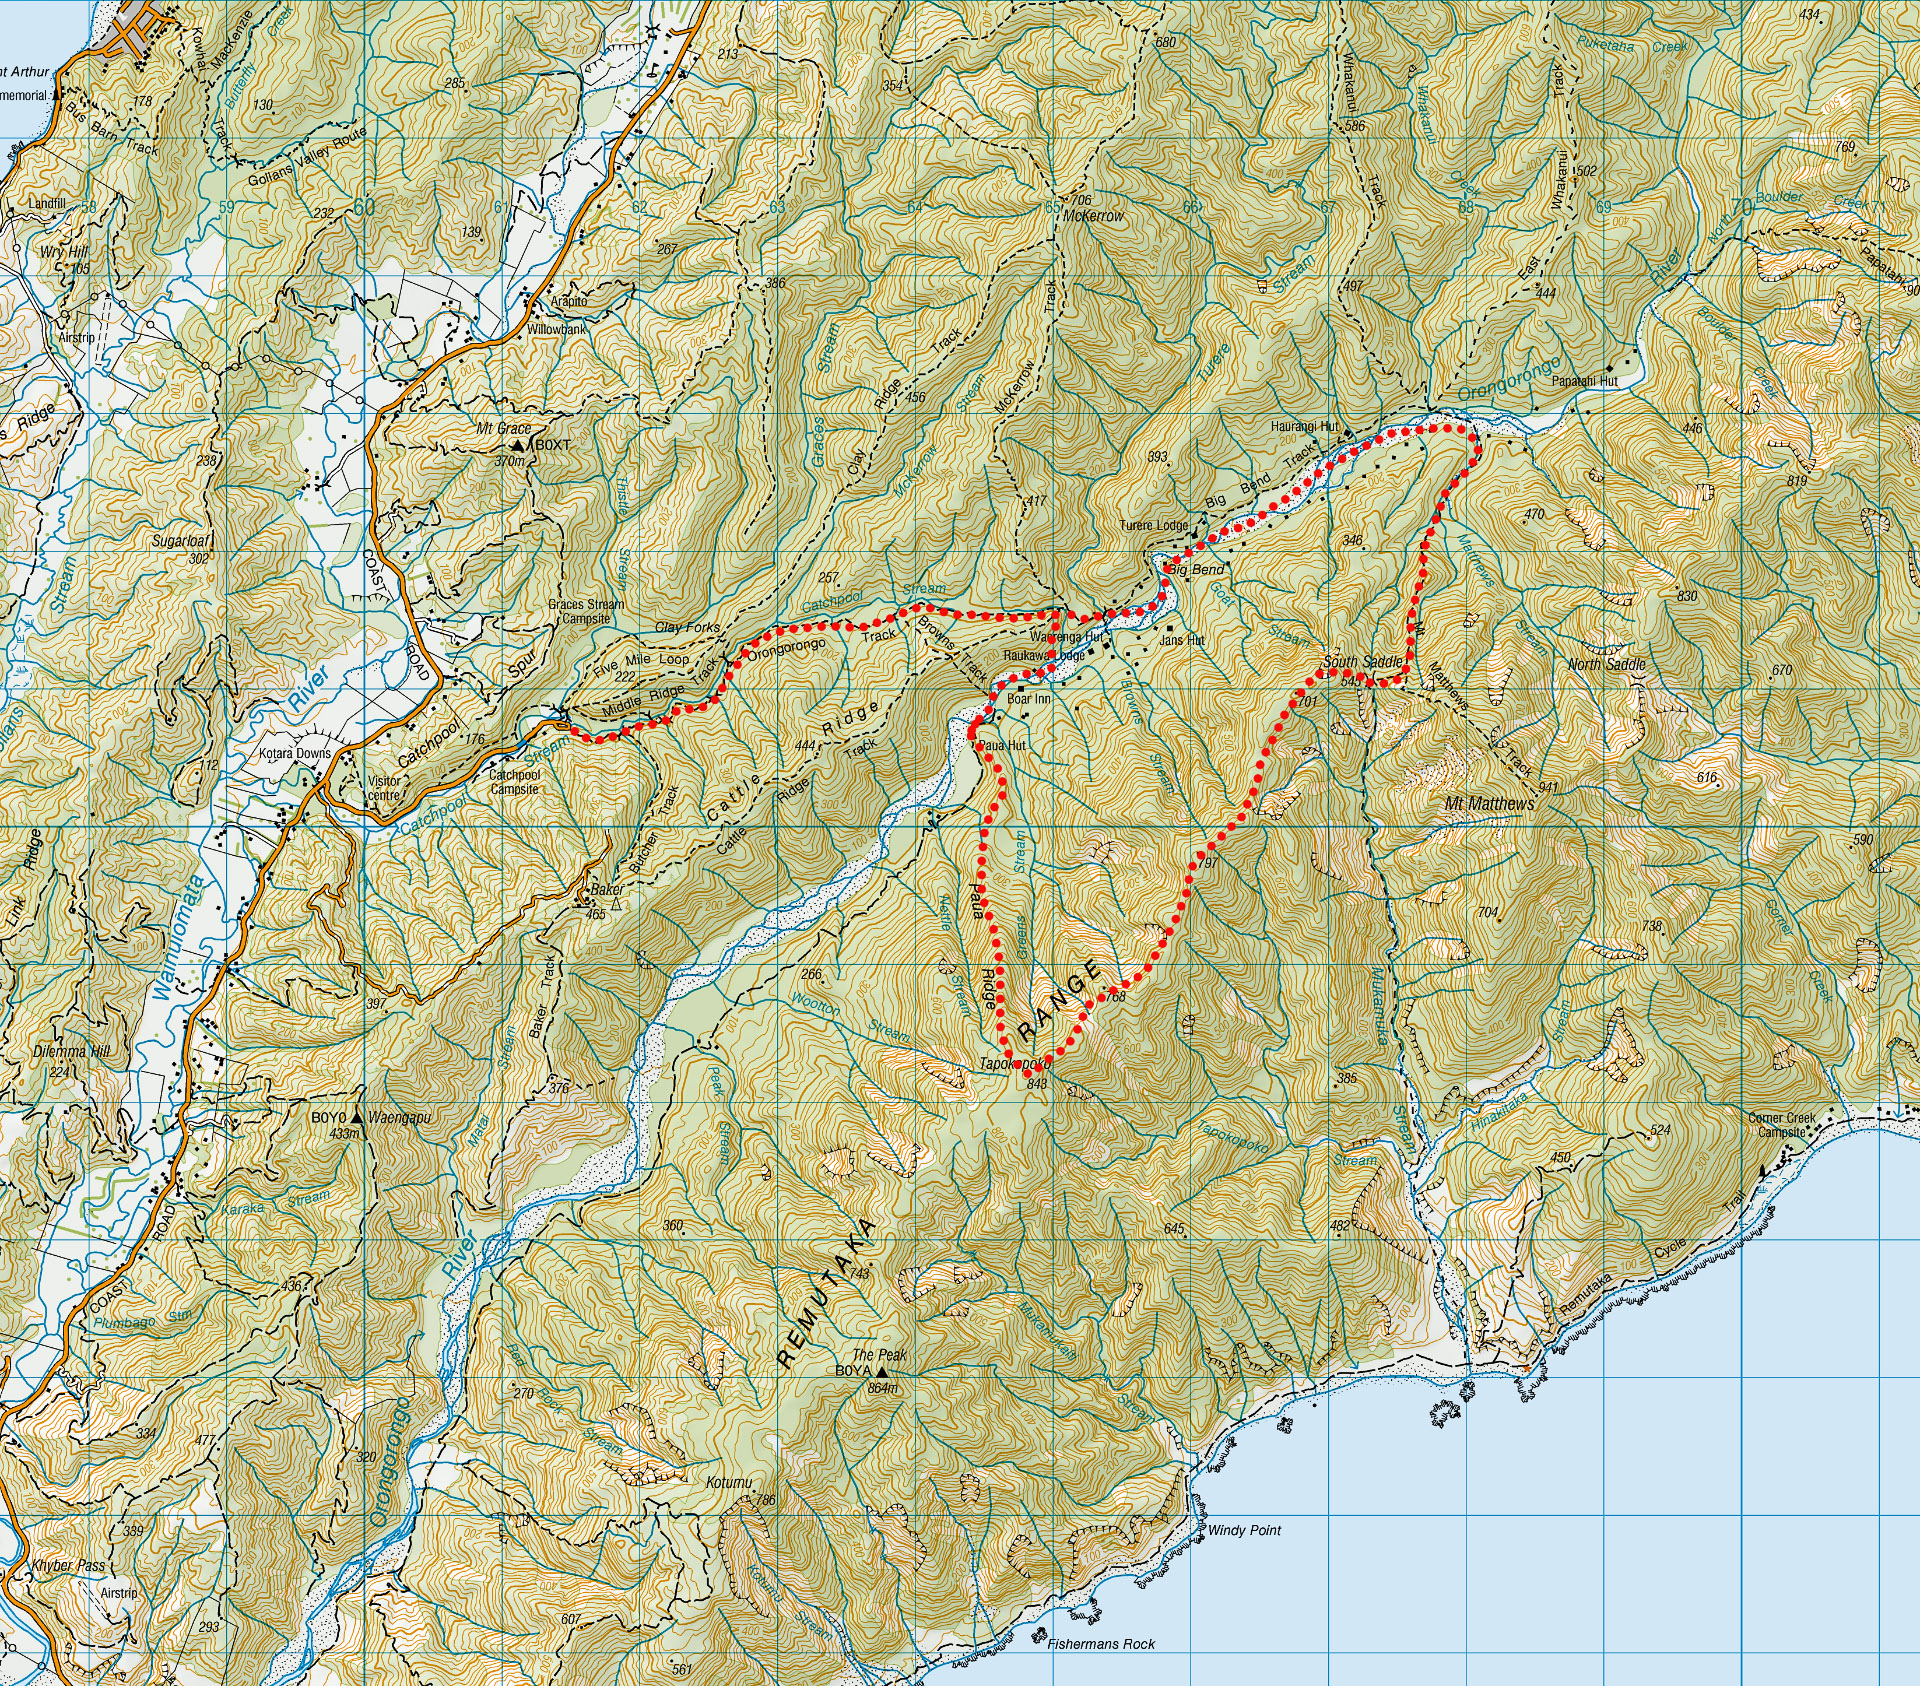 Tapokopoko to South Saddle map